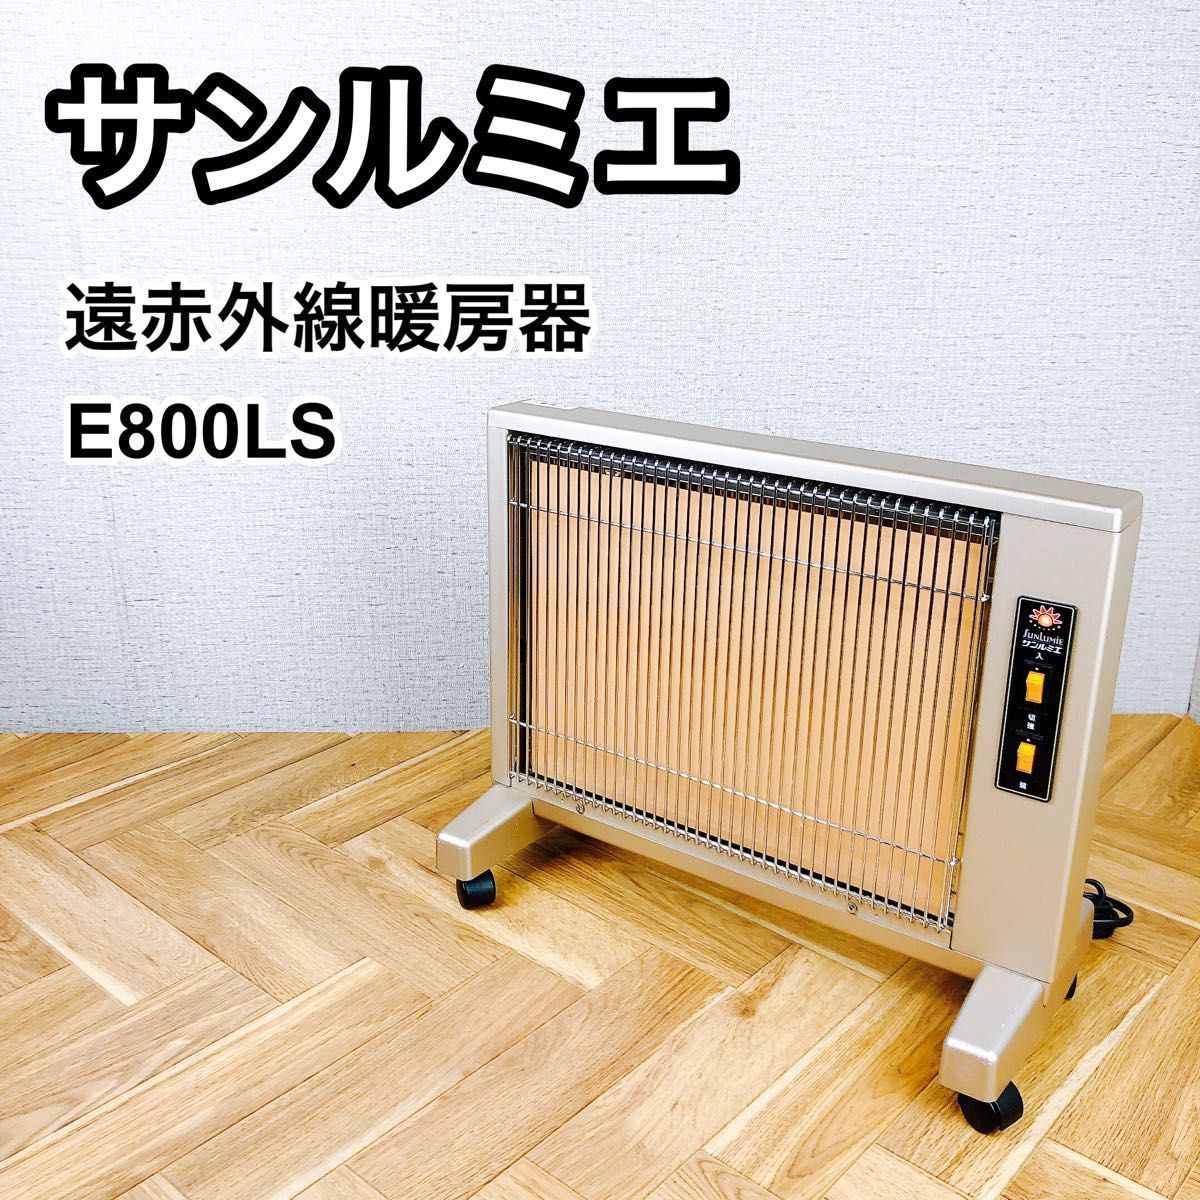 ②サンルミエキュート 遠赤外線暖房器 E800LS_画像1